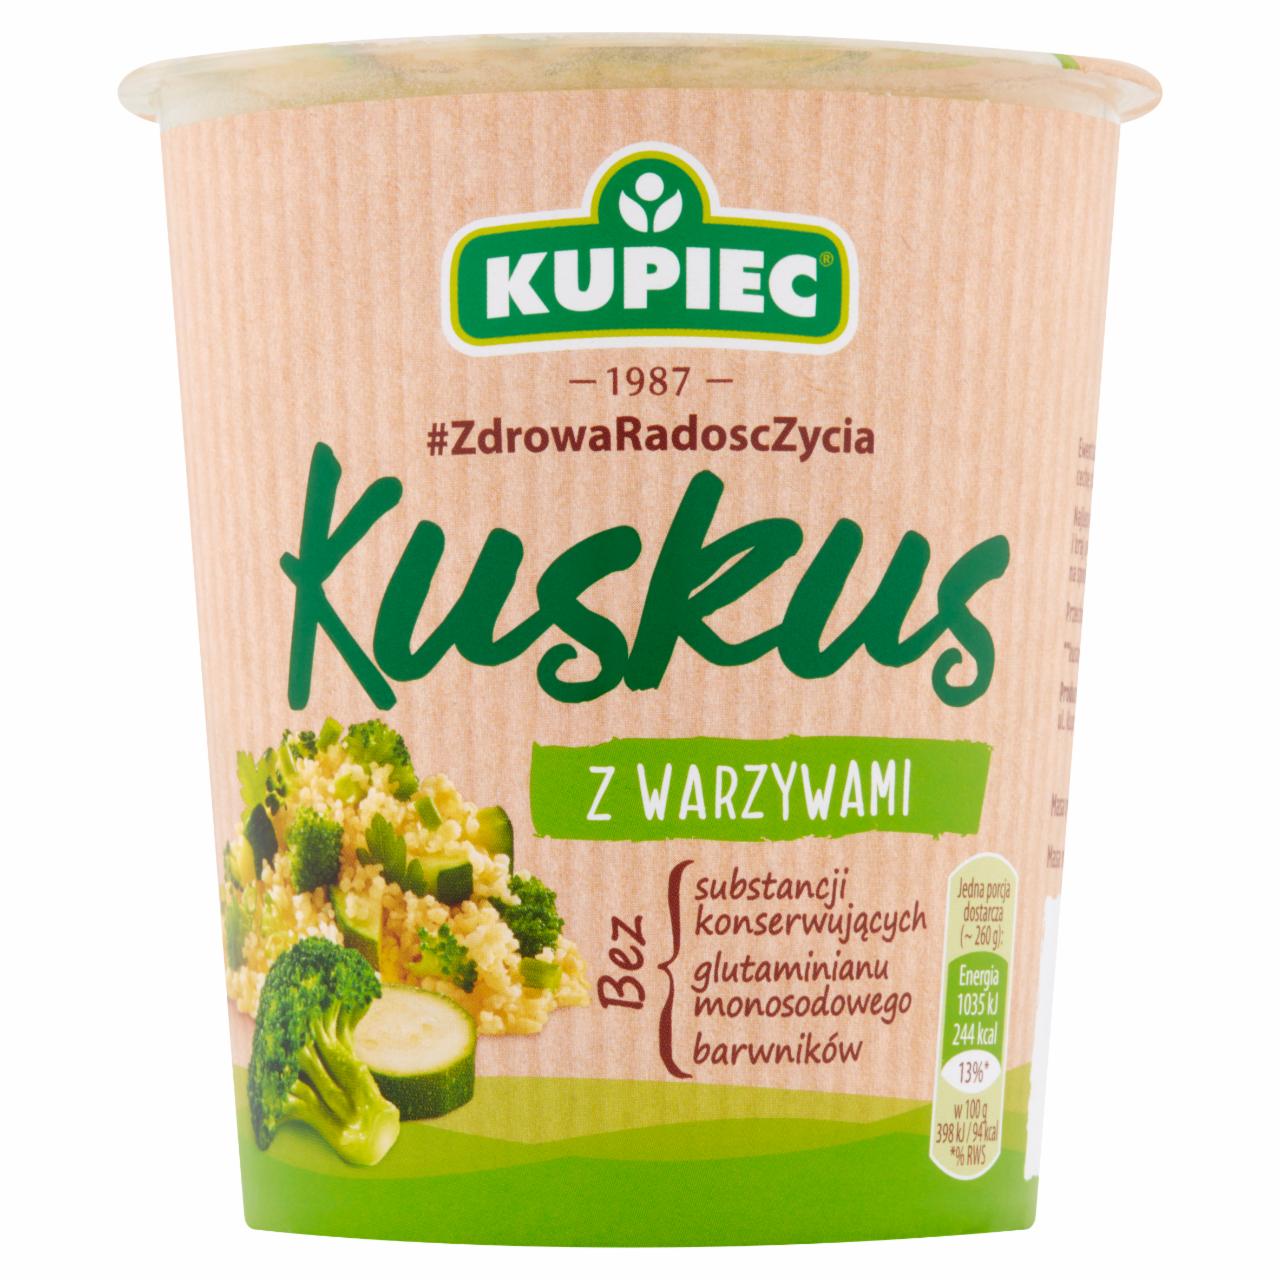 Zdjęcia - Kupiec Kuskus z warzywami 70 g